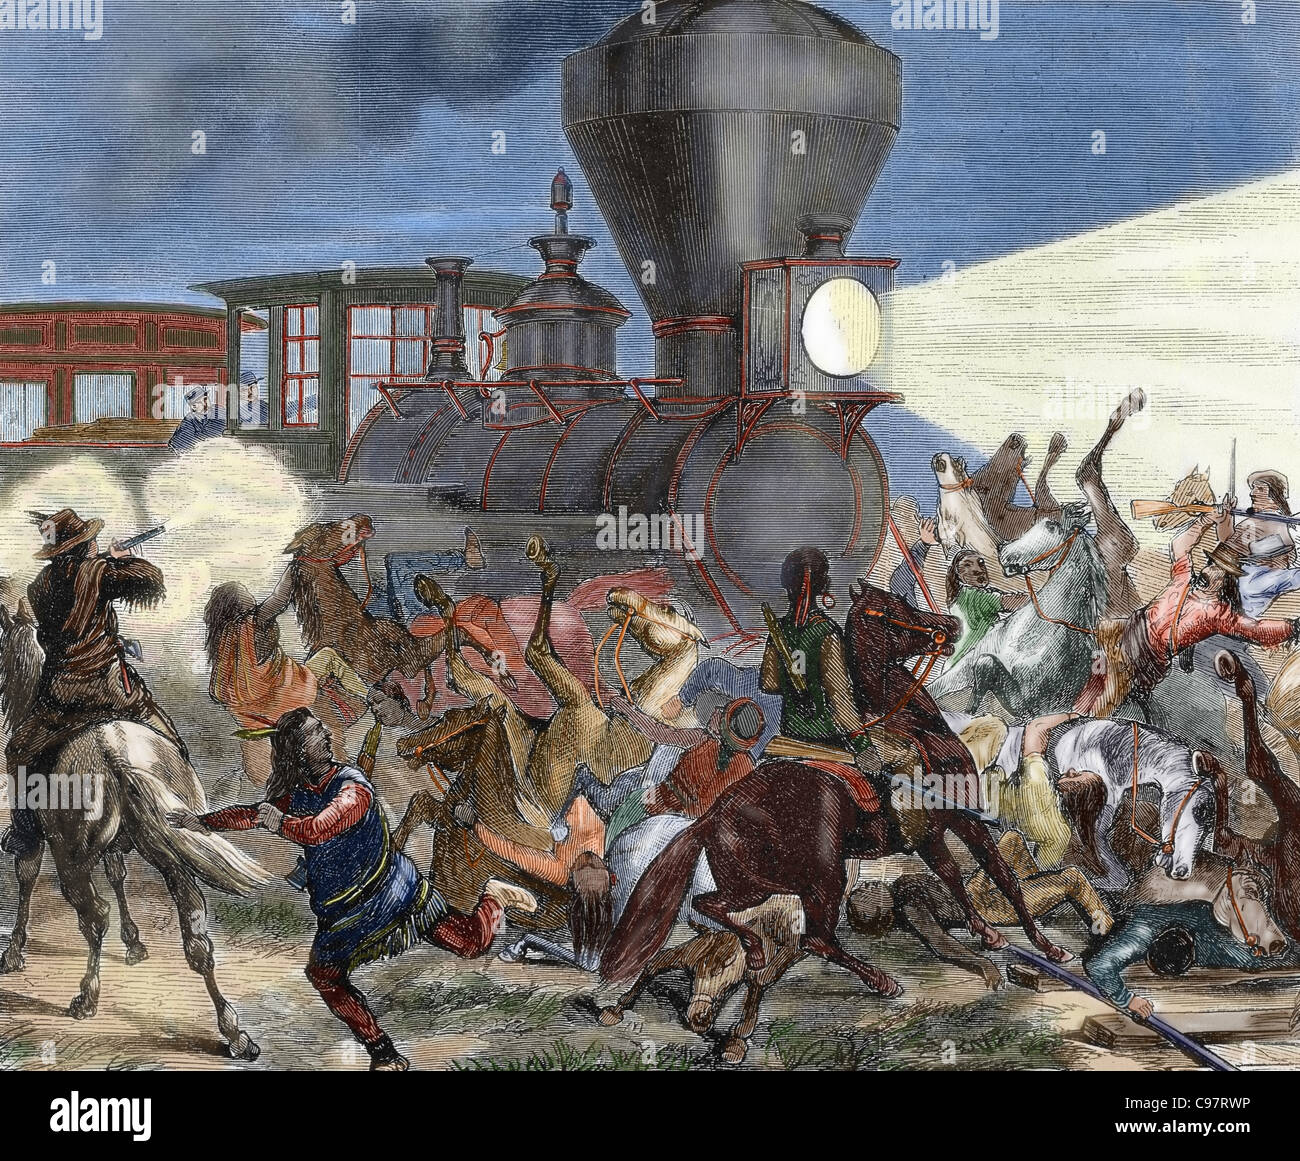 Geschichte des amerikanischen Westens. Des neunzehnten Jahrhunderts. Union Pacific Zug am 14. Juni 1870 von Indianern angegriffen. Stockfoto